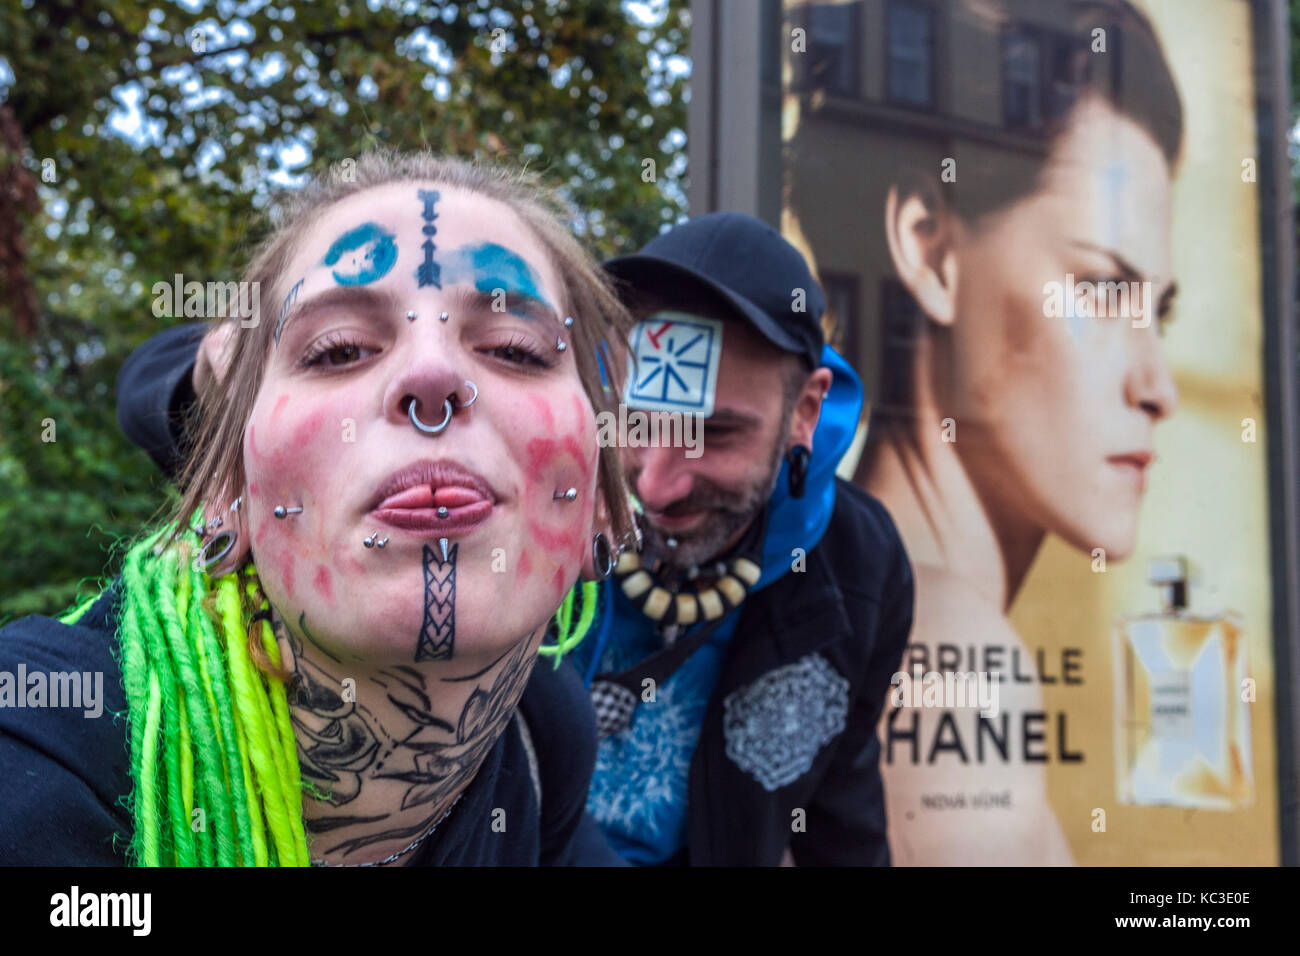 Junge tätowierte Frau Mädchen mit Piercing auf ihrem Gesicht und grünen  Dreadlocks, im Rücken ist eine Anzeige auf Parfüm Chanel, Prag,  Tschechische Republik Stockfotografie - Alamy